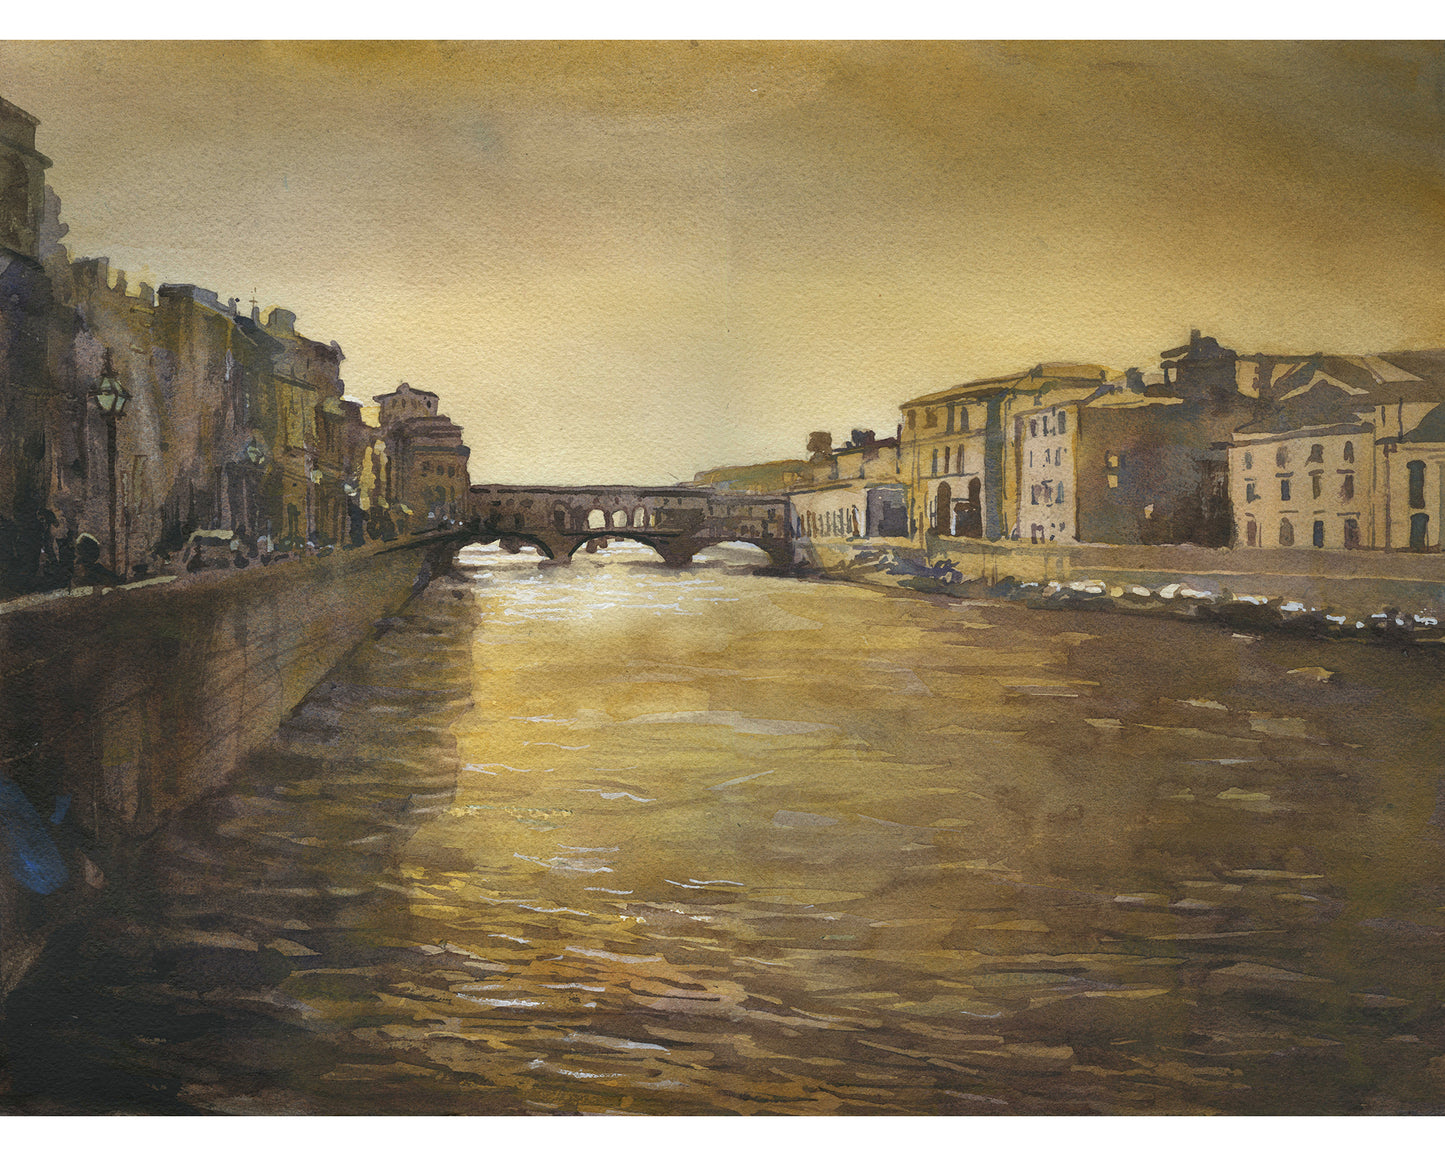 Ponte Vecchio bridge medieval city of Florence, Italy. Watercolor of Ponte Vecchio, Florence art Italy painting fine art (print)